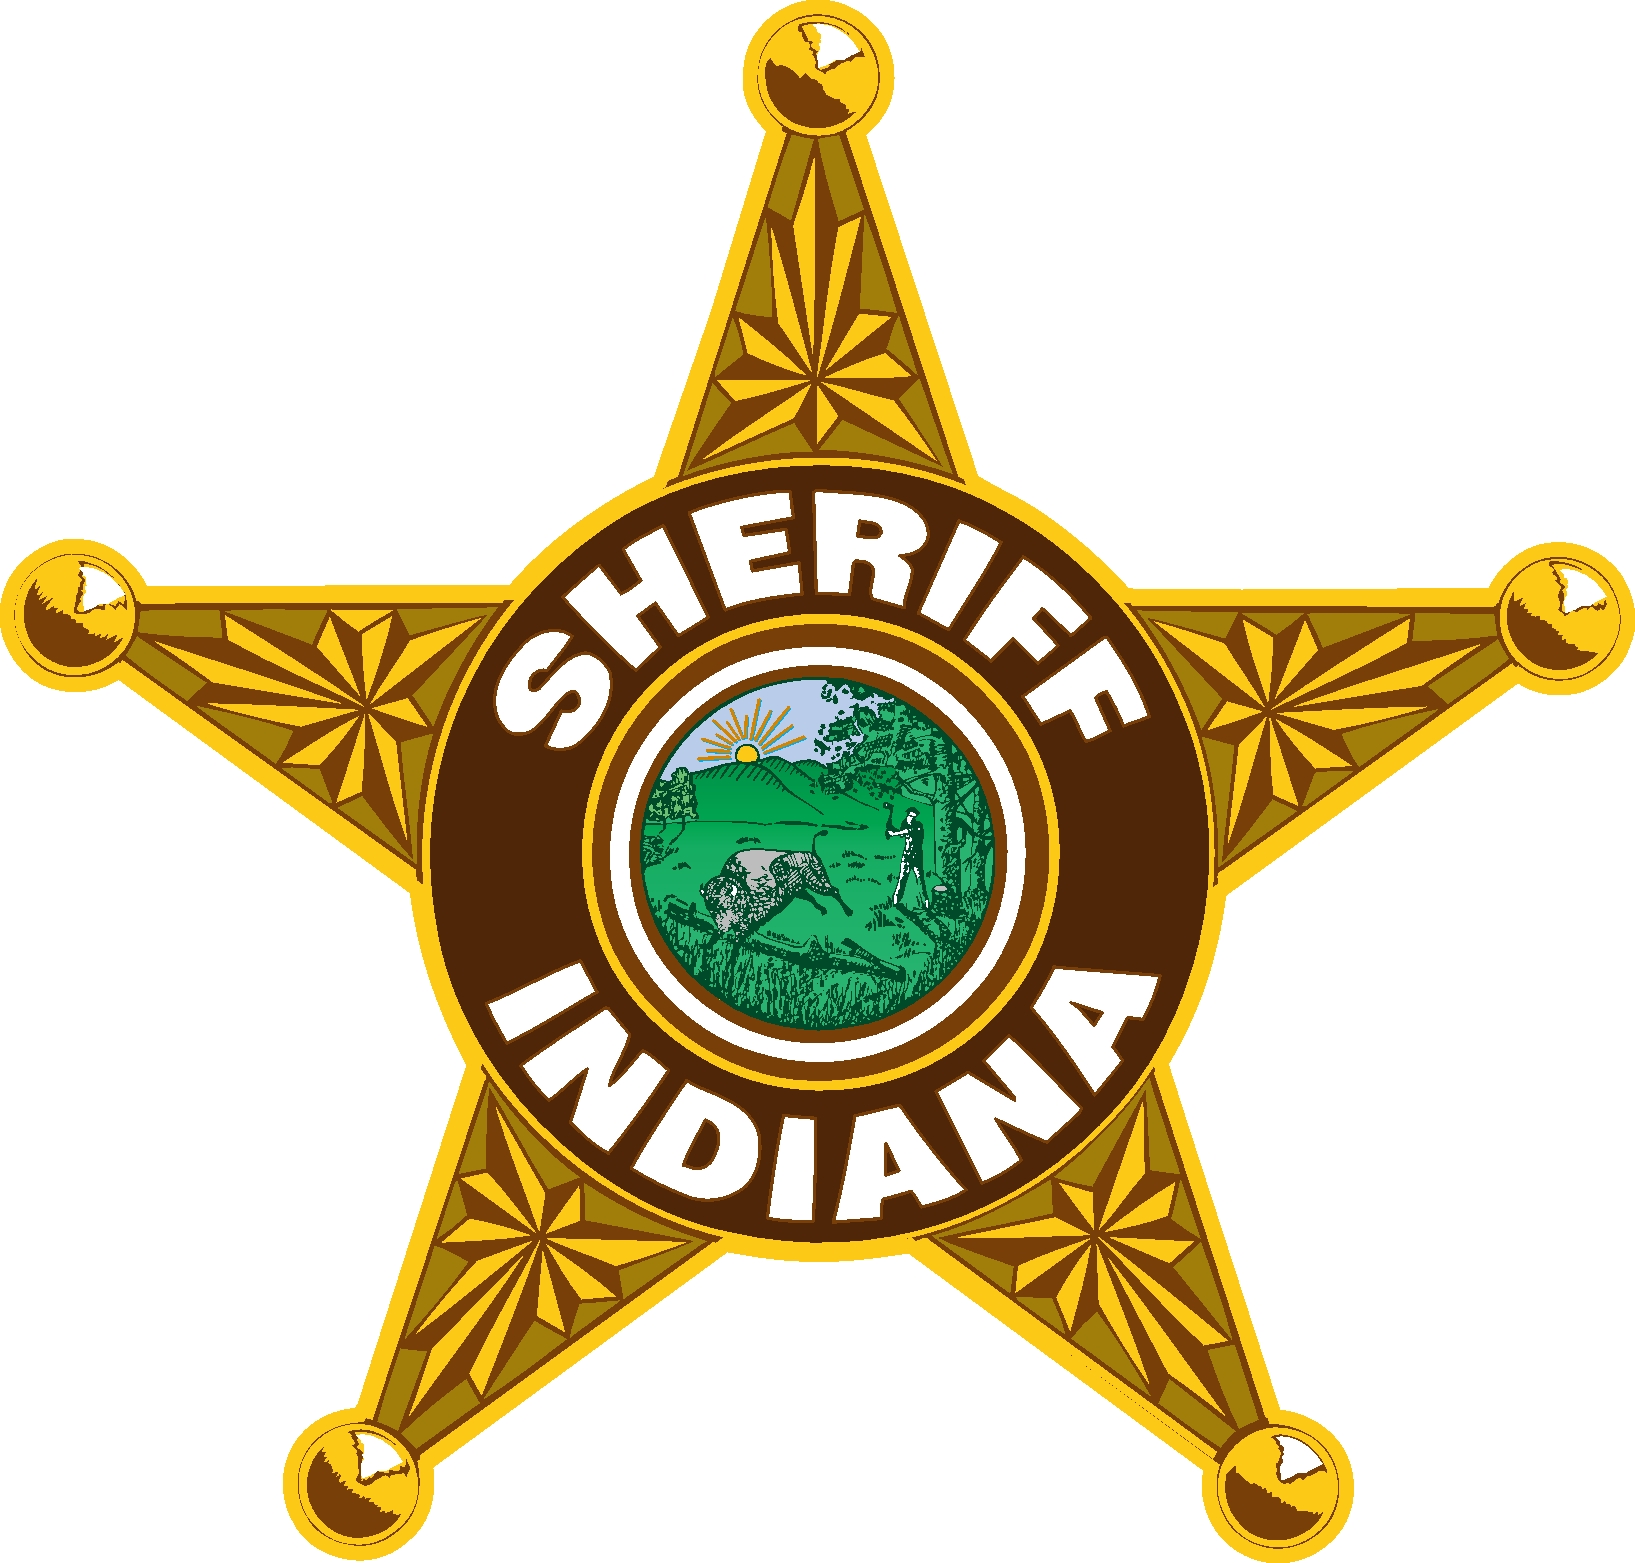 SHERIFF INDIANA